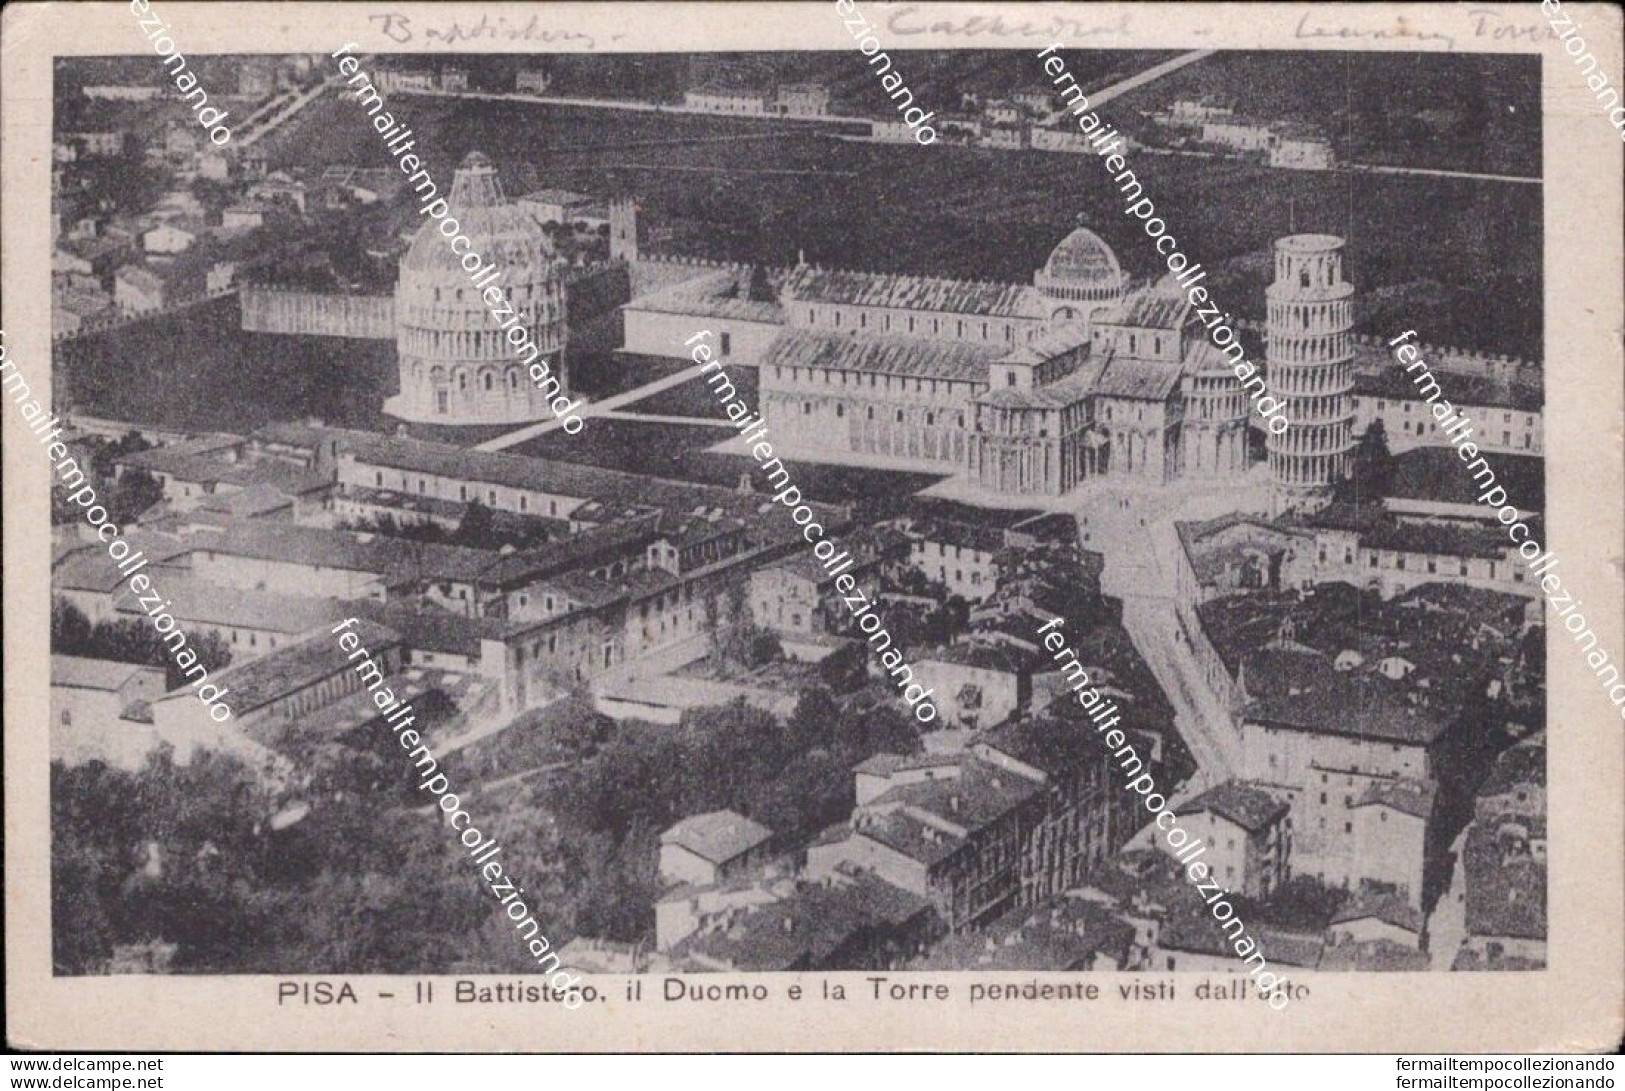 Bs726 Cartolina Pisa Citta' Il Battistero Il Duomo E La Torre Pendente Dall'alto - Pisa